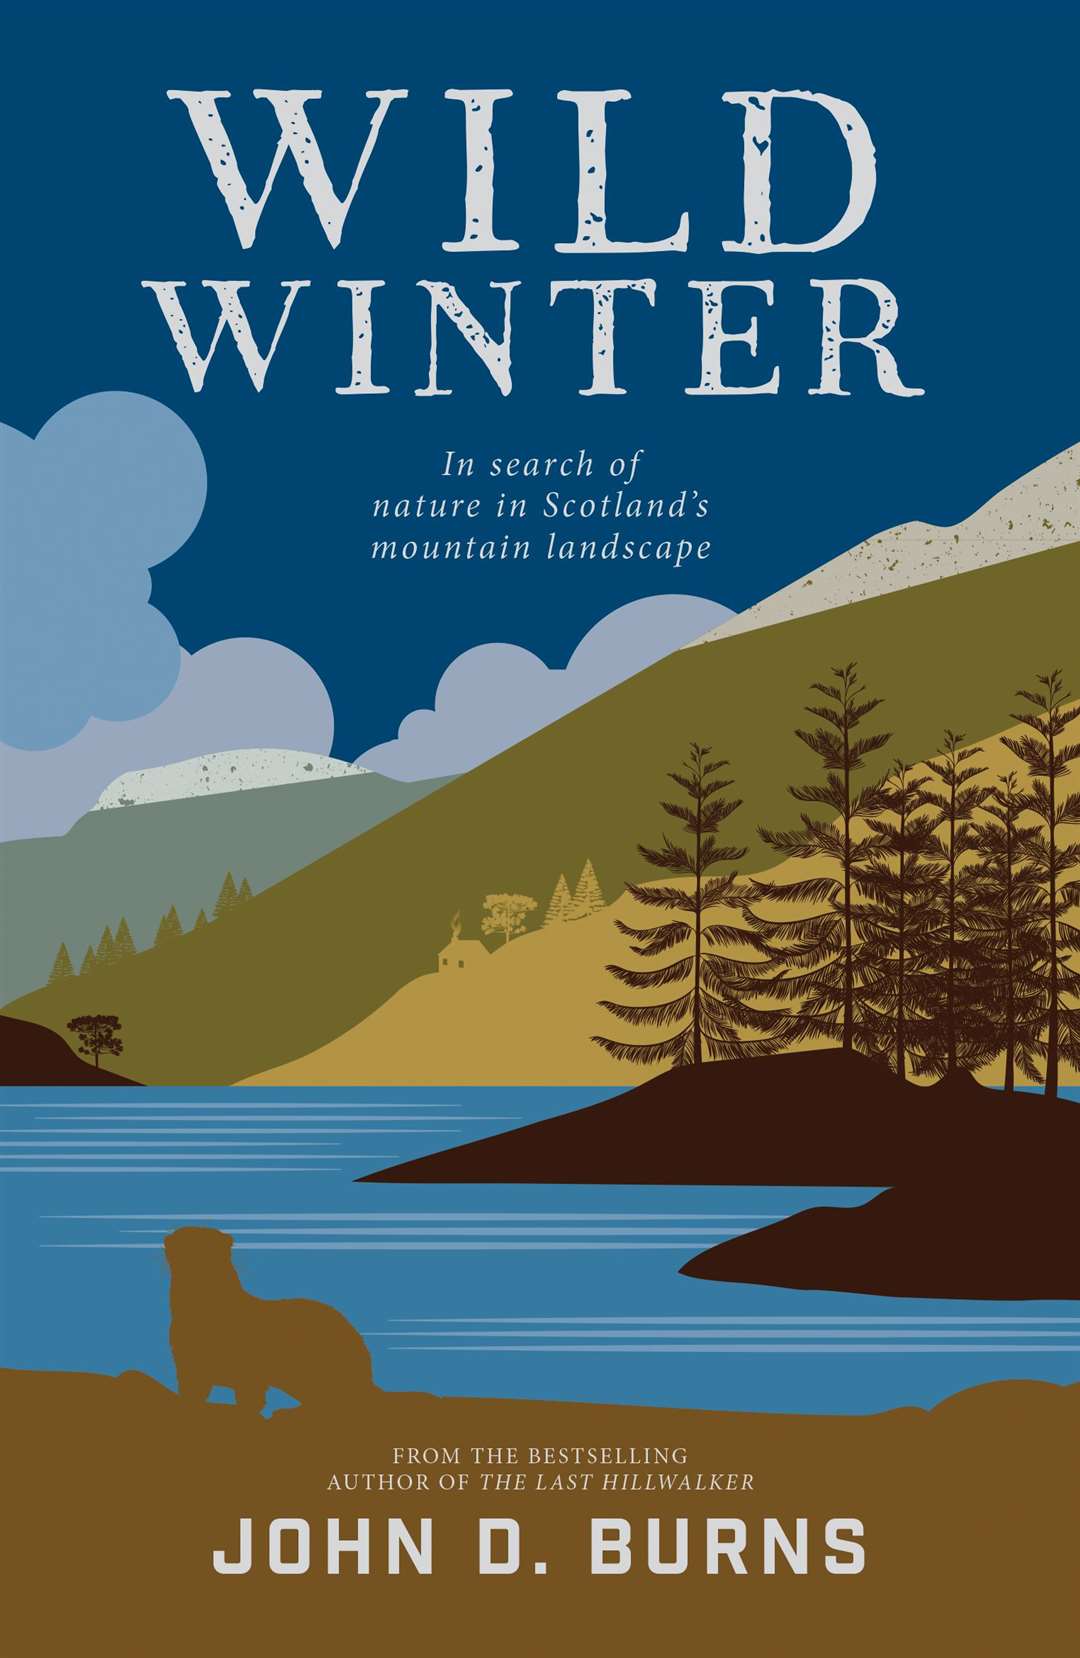 Wild Winter by John D Burns.